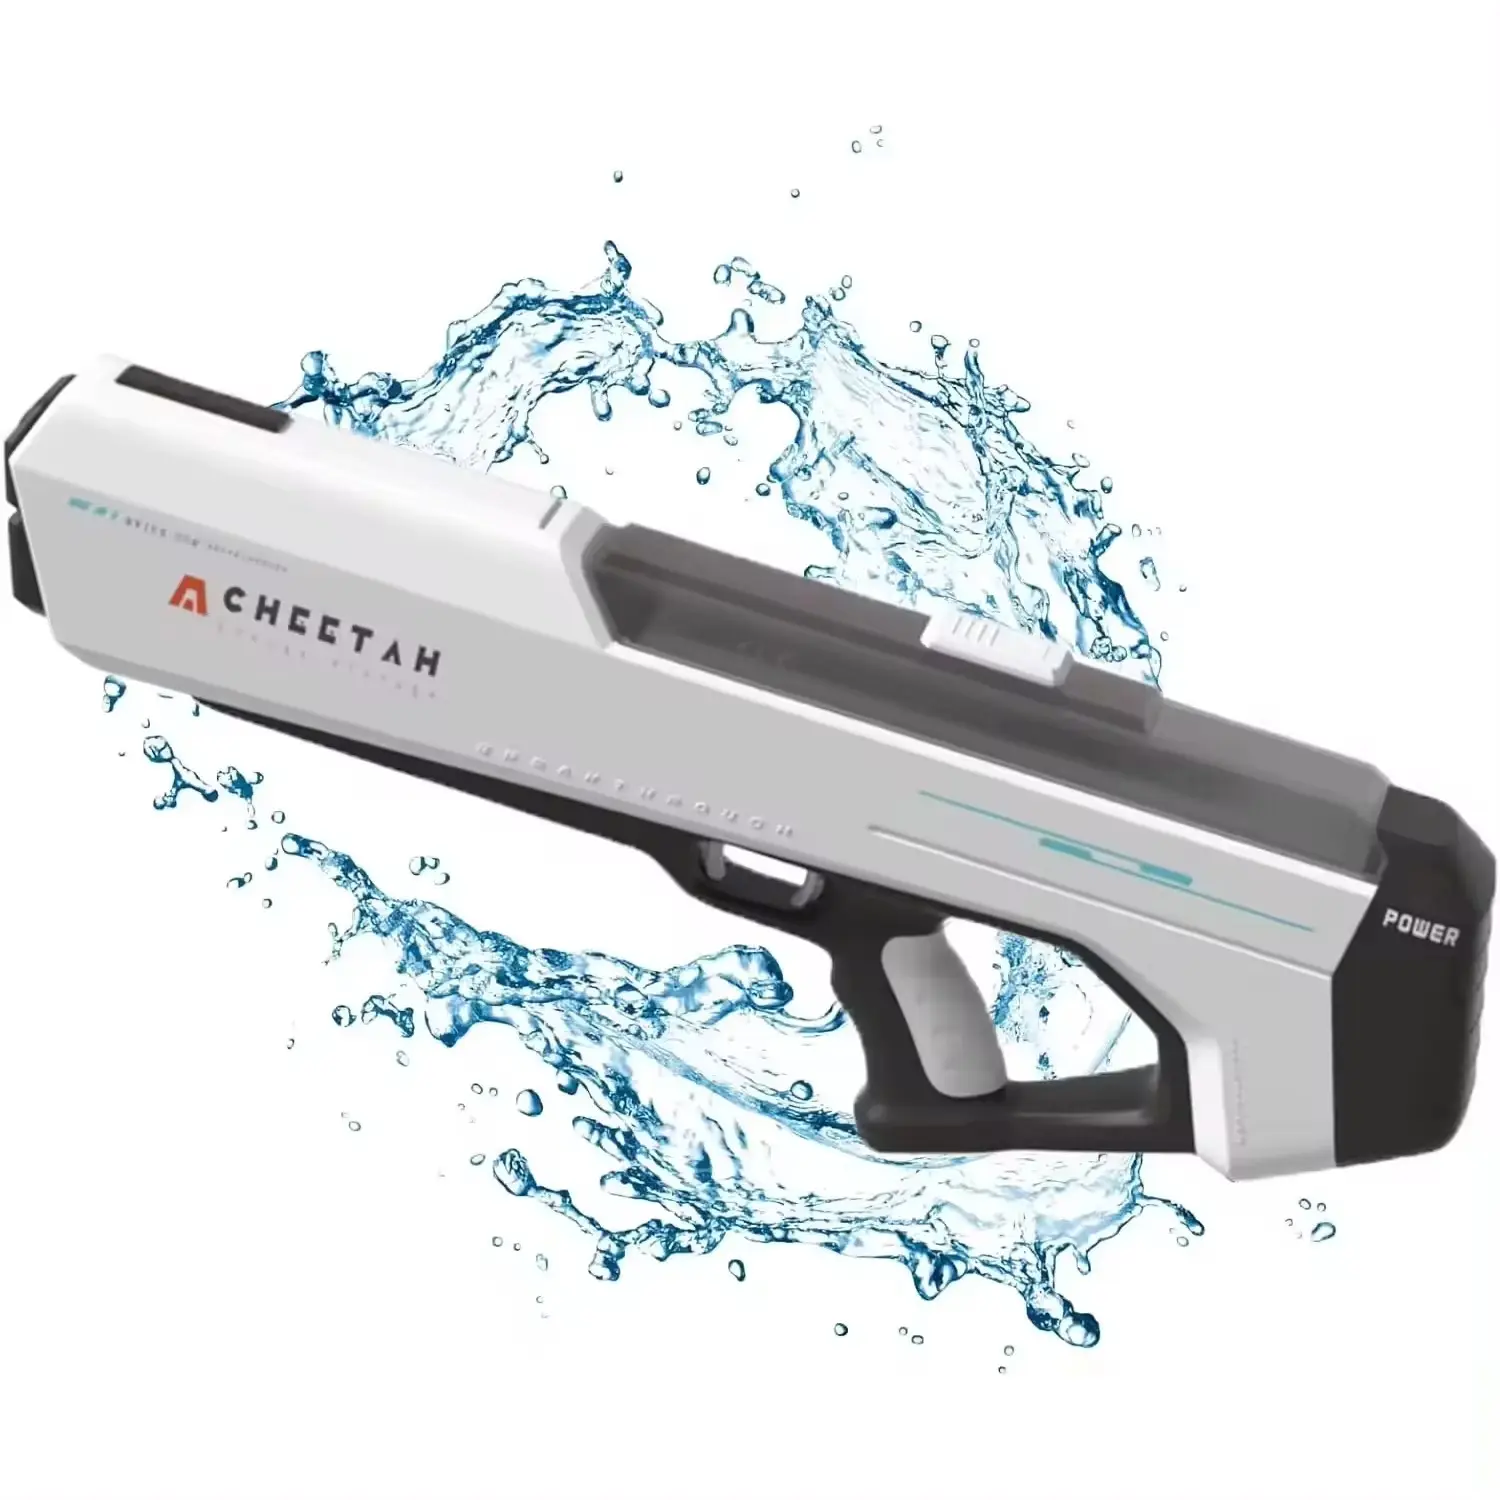 Hot Selling Elektrische Waterpistool Speelgoed Voor Volwassenen 32 Ft Schietbaan Super Soaker Waterpistolen Grote Capaciteit